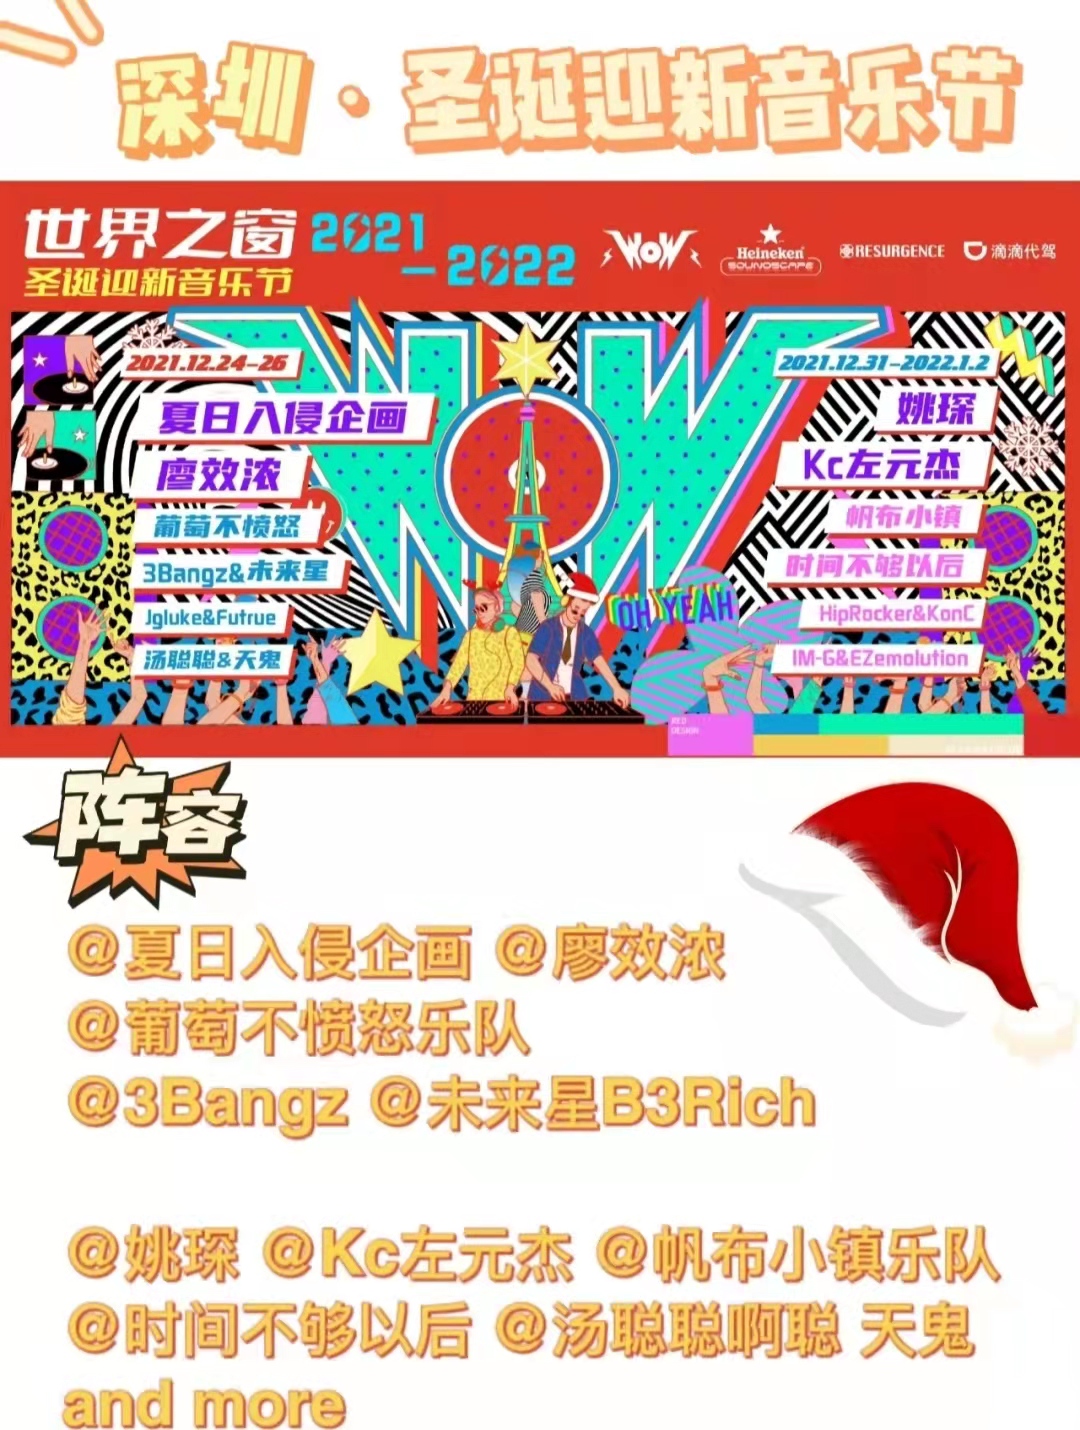 深圳世界之窗圣诞迎新音乐节